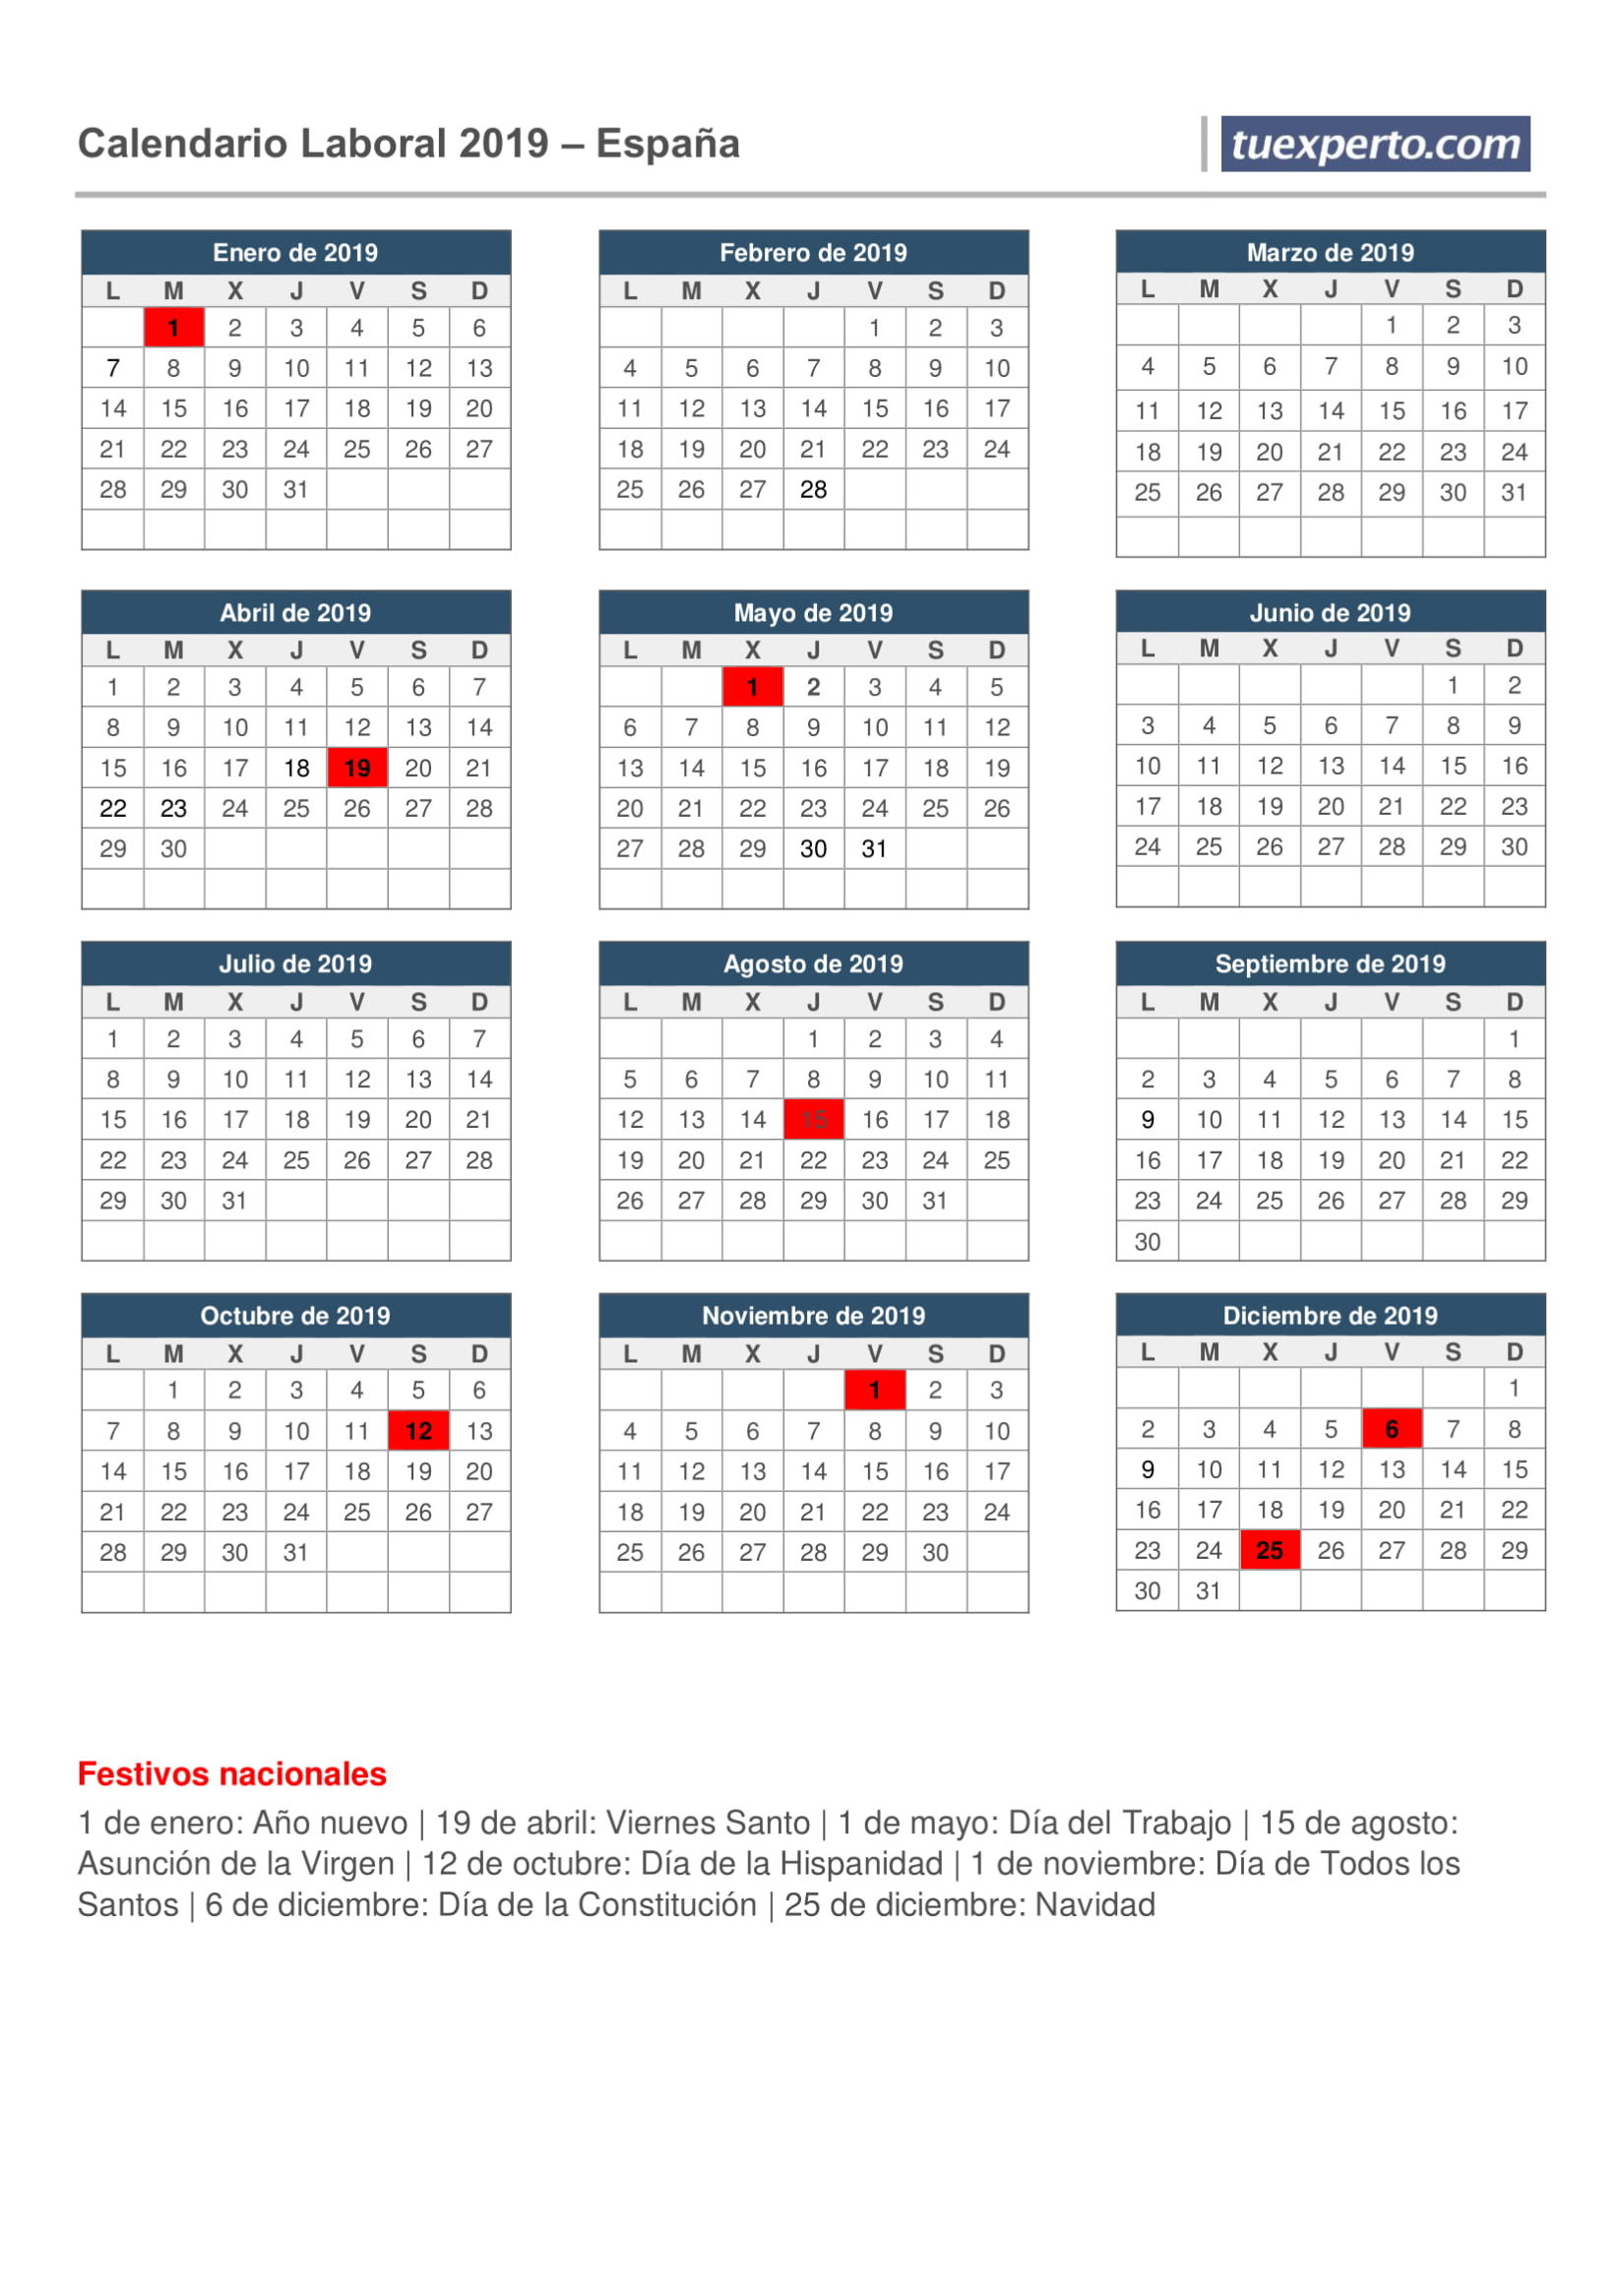 Calendario laboral 2019 para descargar 